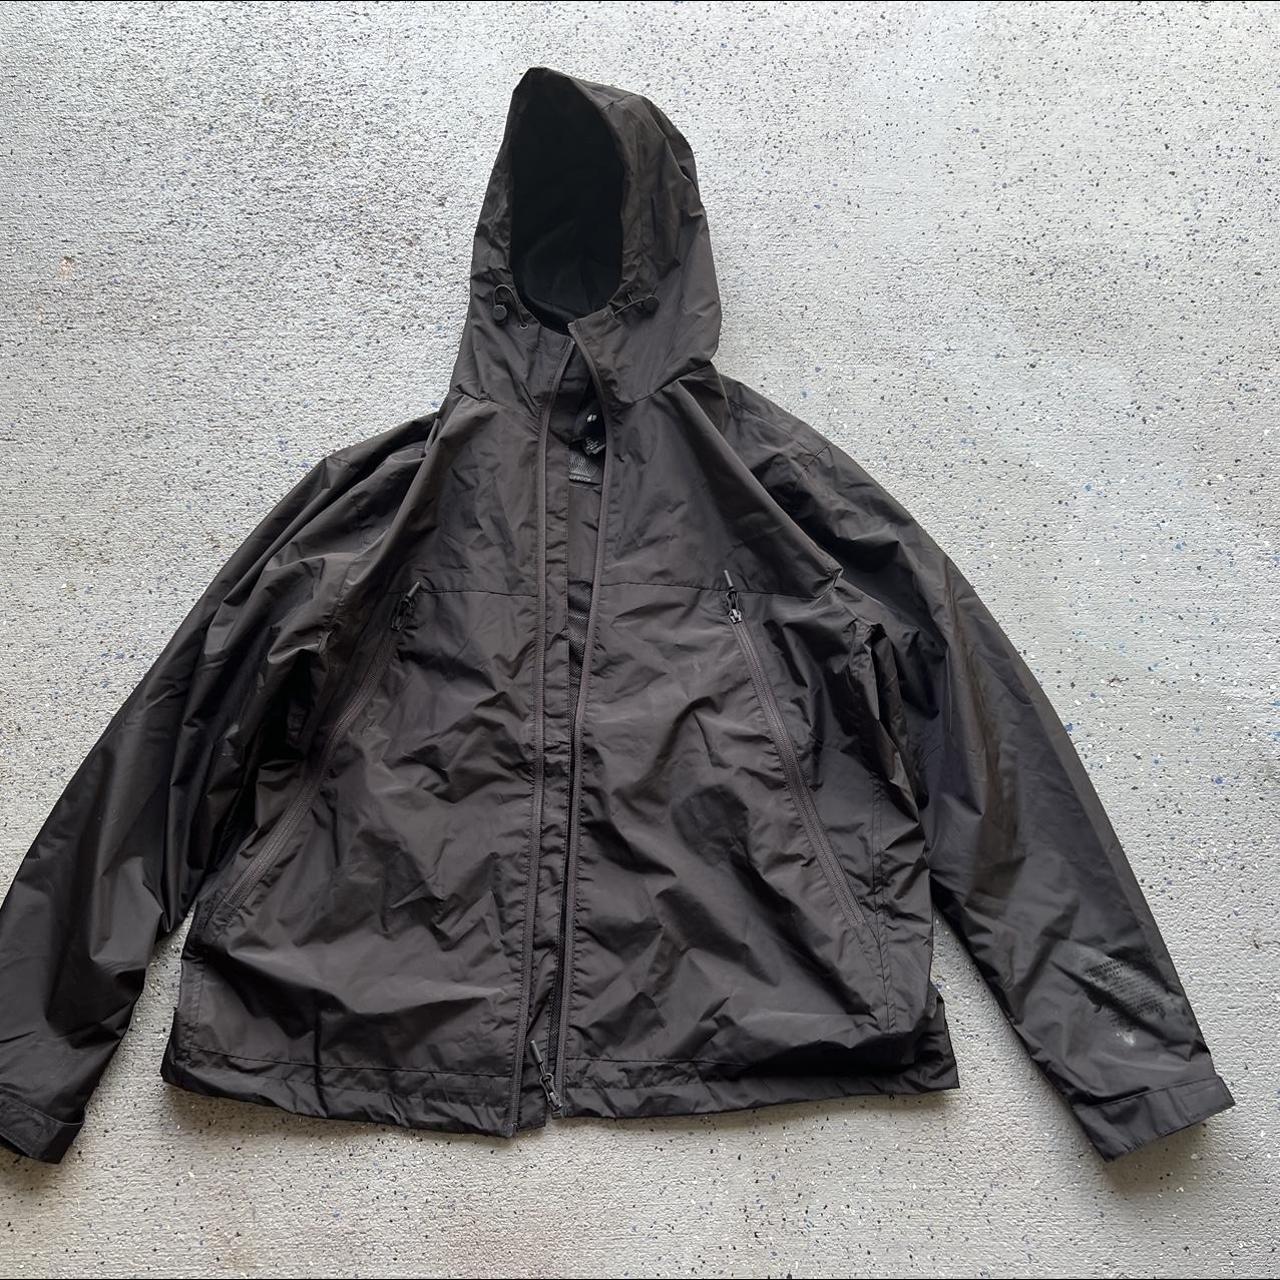 Windbreaker rain jacket Size xL fits like an... - Depop